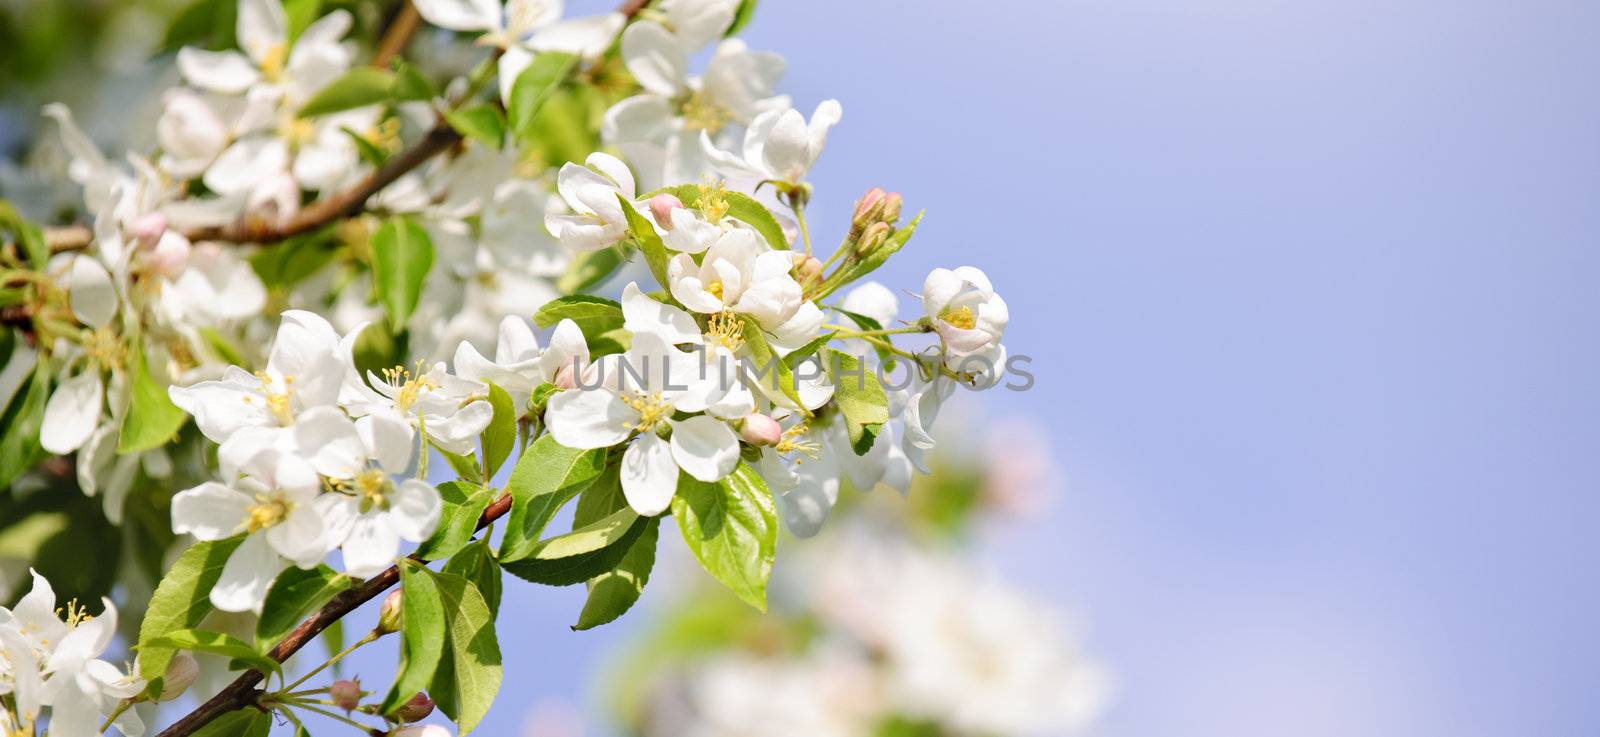 Blooming apple tree by elenathewise